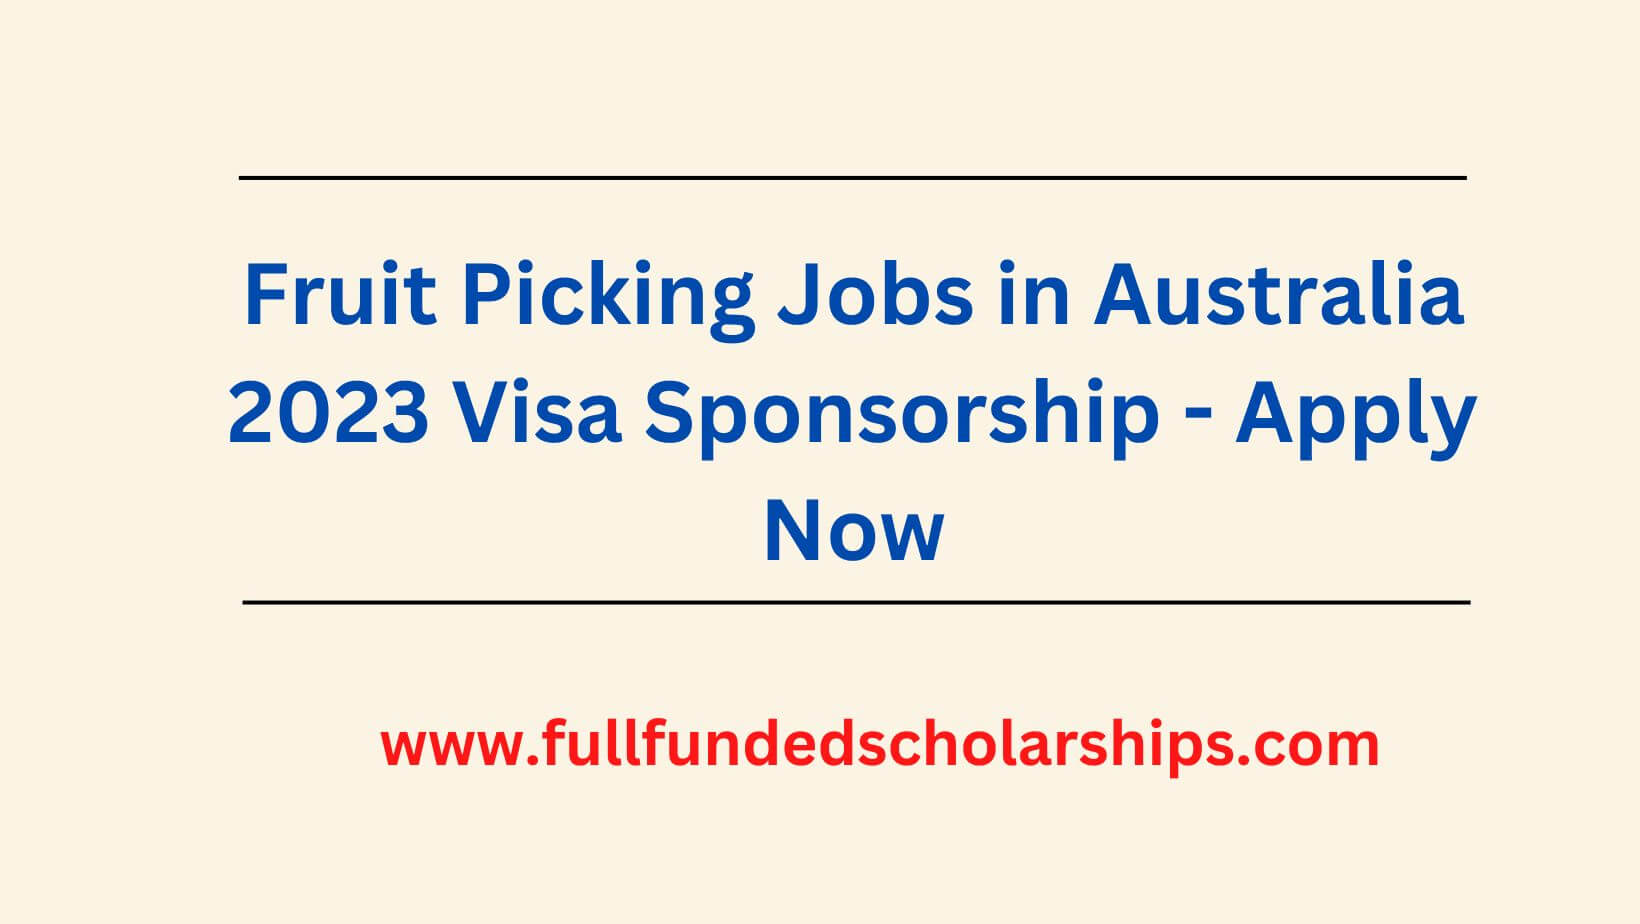 Fruit Picking Jobs in Australia 2023 Visa Sponsorship - Apply Now